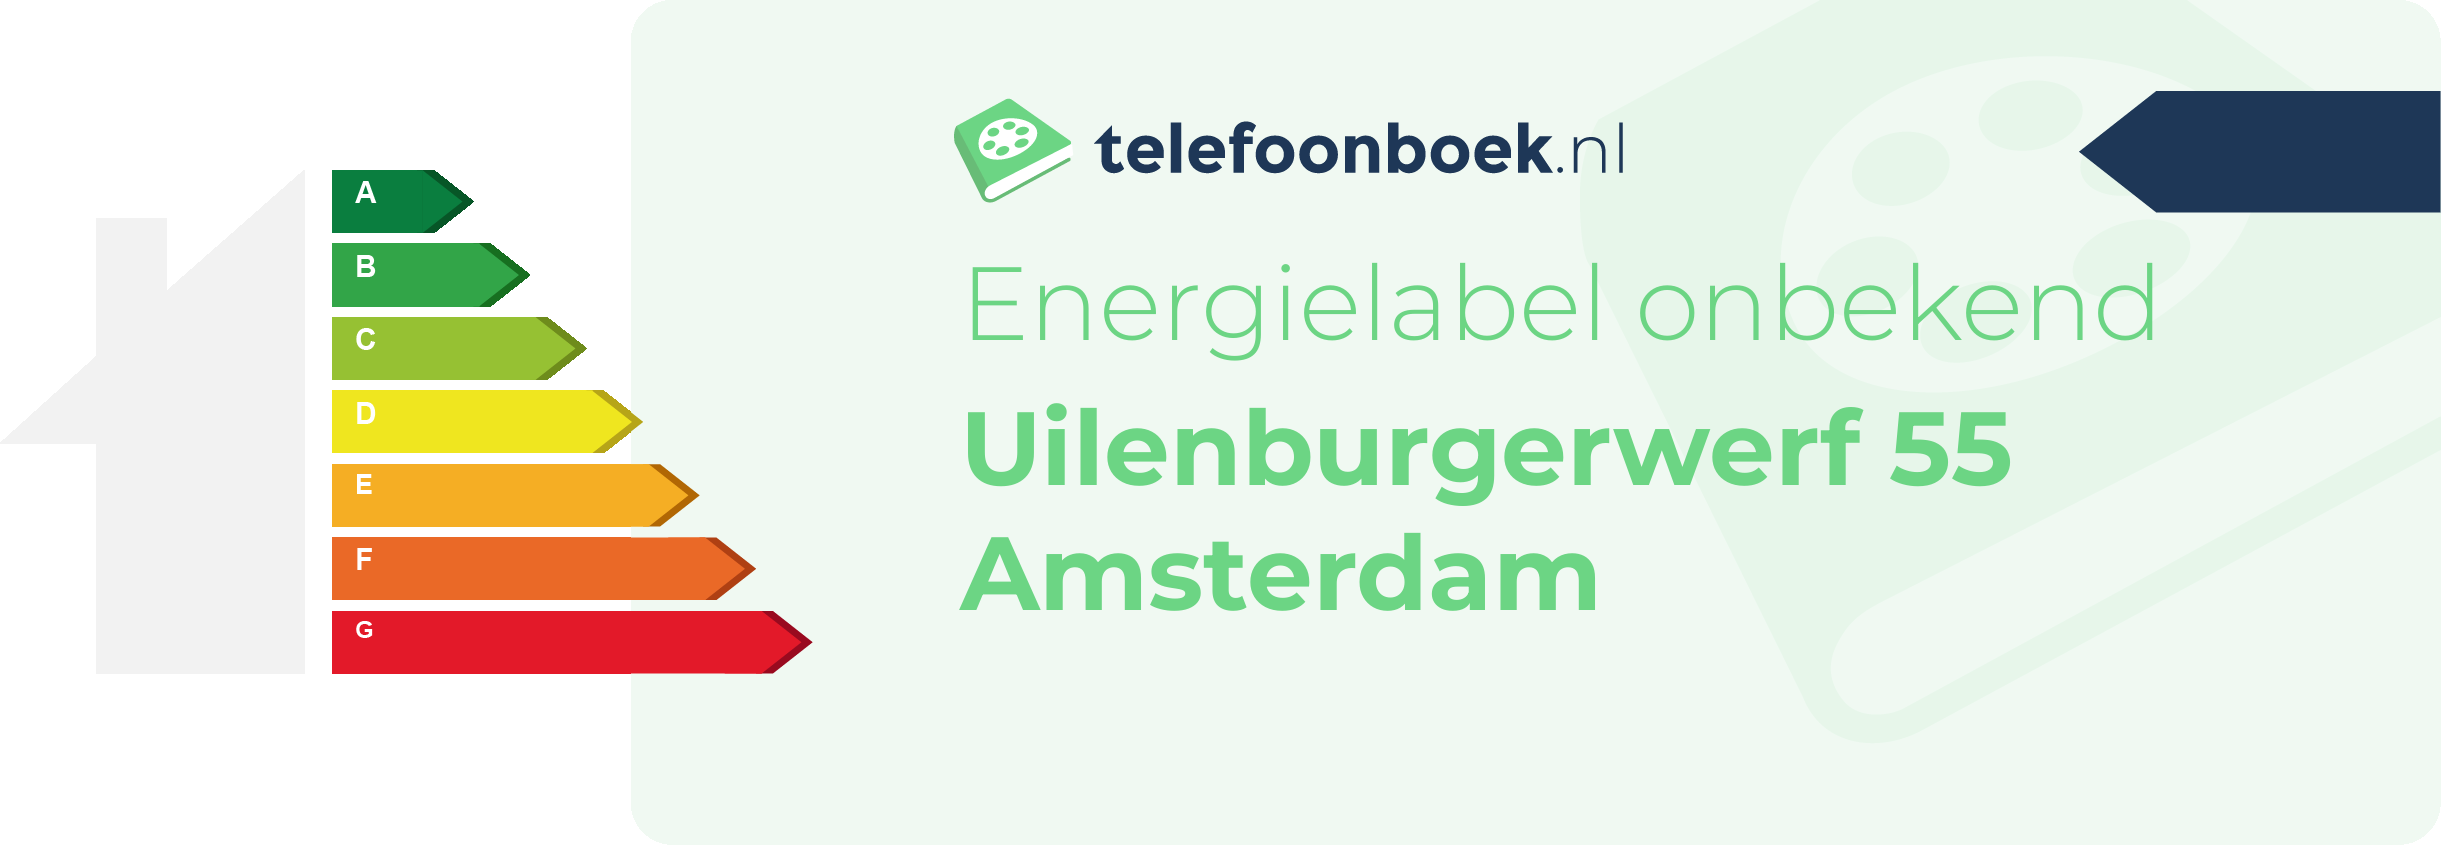 Energielabel Uilenburgerwerf 55 Amsterdam